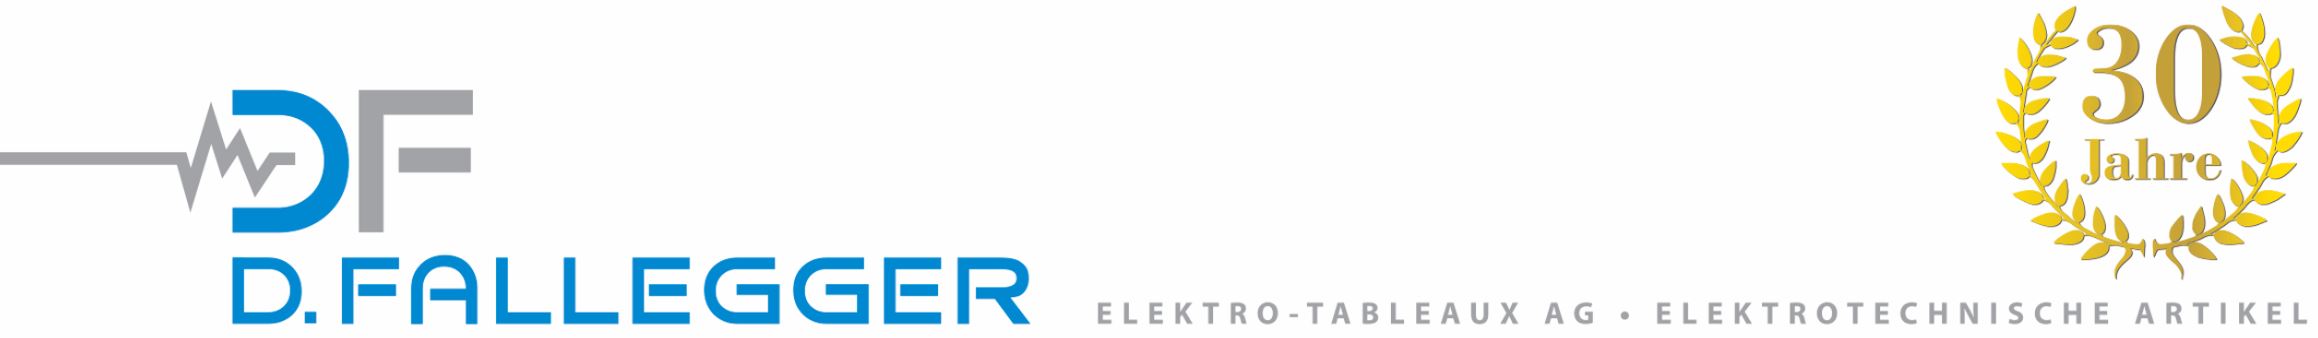 D.Fallegger Elektro-Tableaux AG